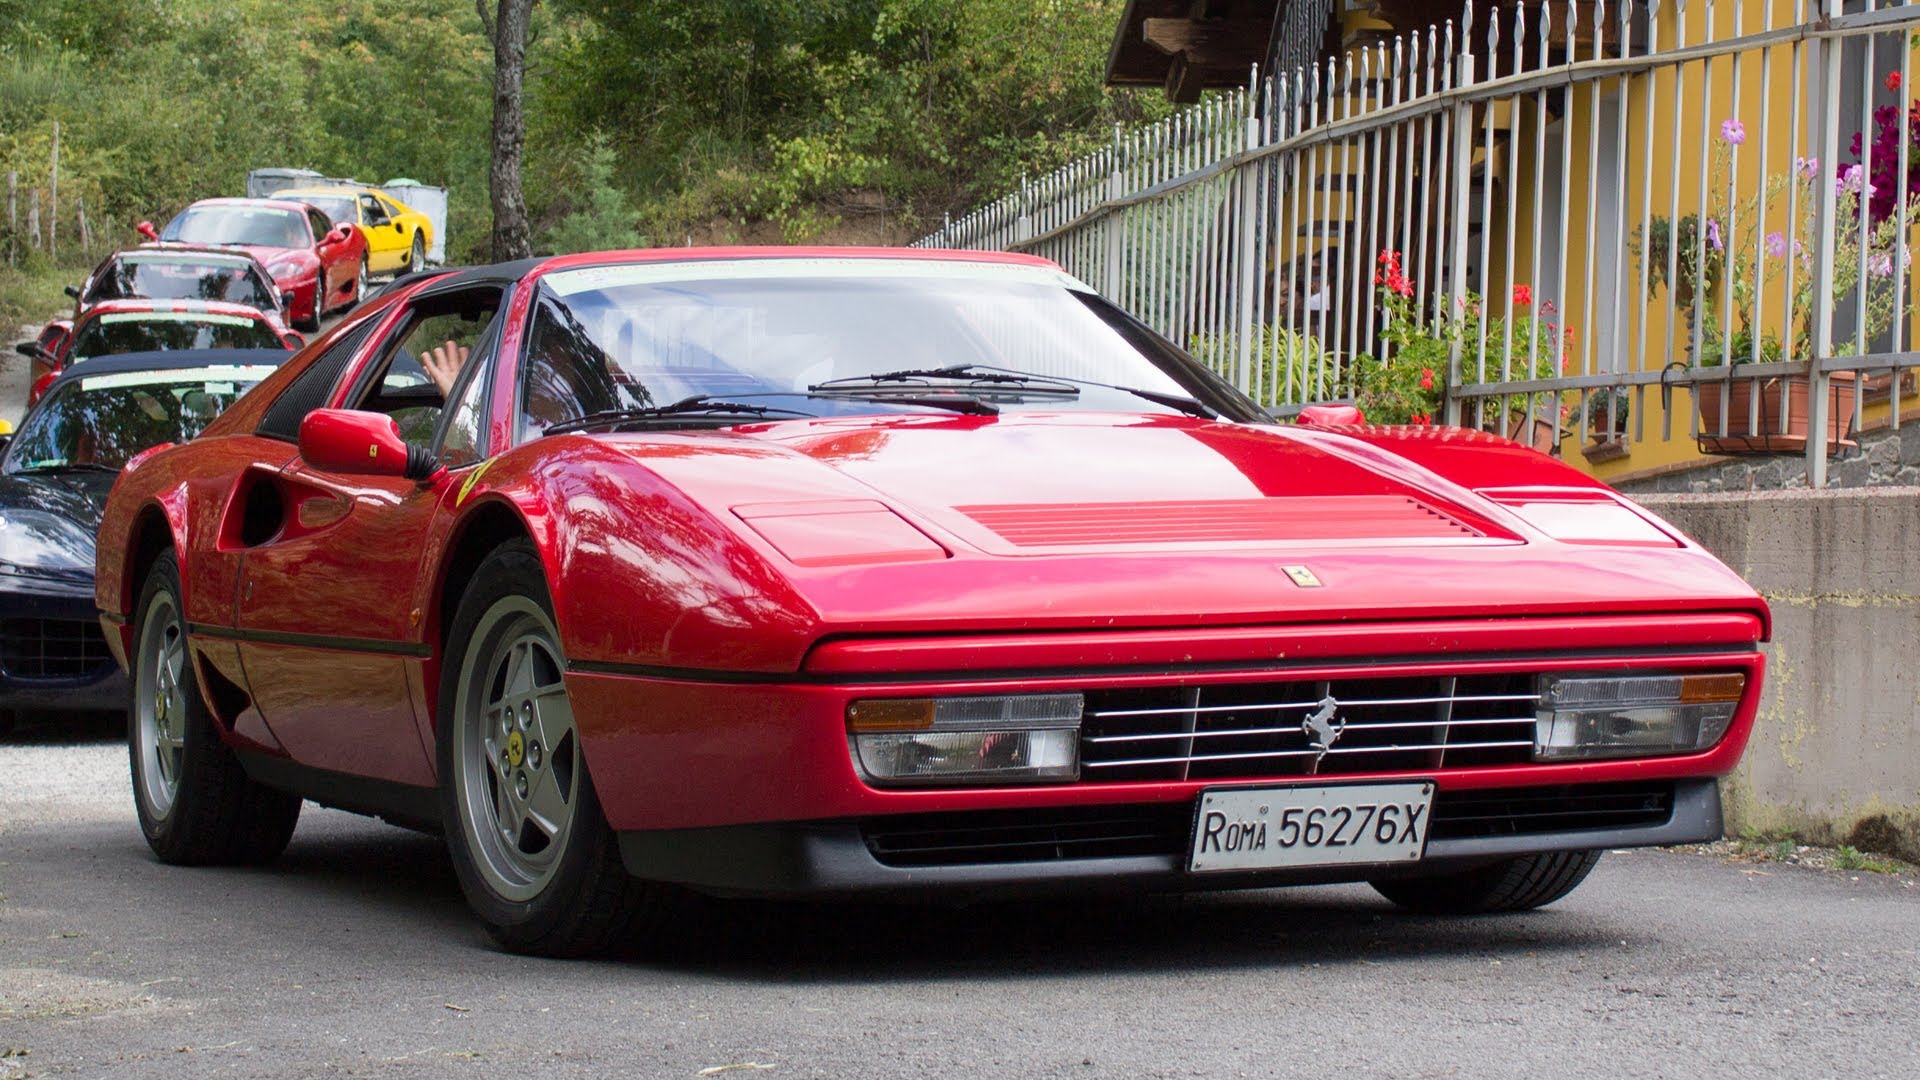 Ferrari Gts Turbo Wallpapers